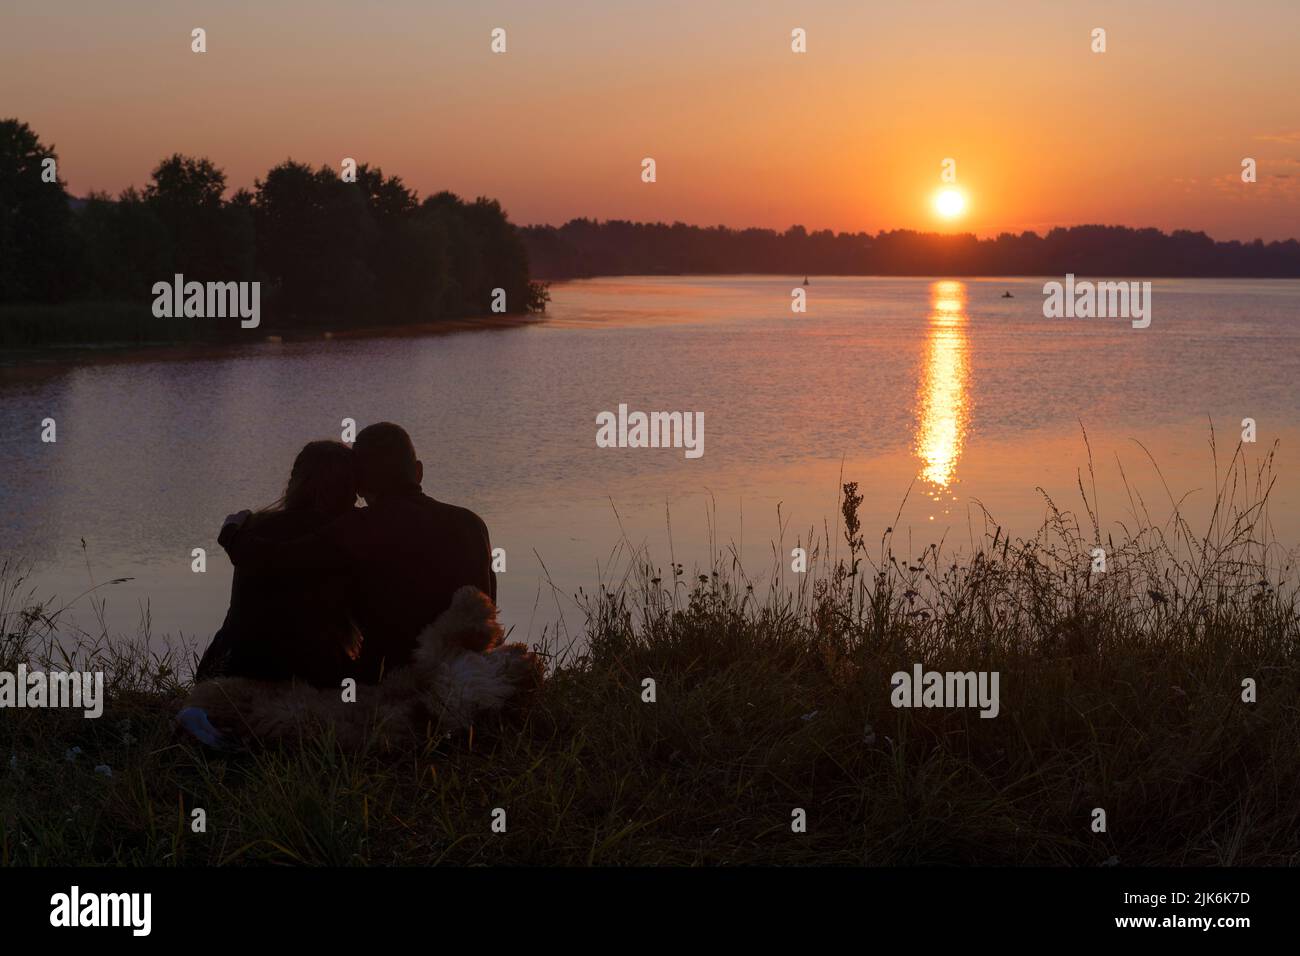 Romántico amanecer de julio en el río Volga. Región de Tver, Rusia Foto de stock